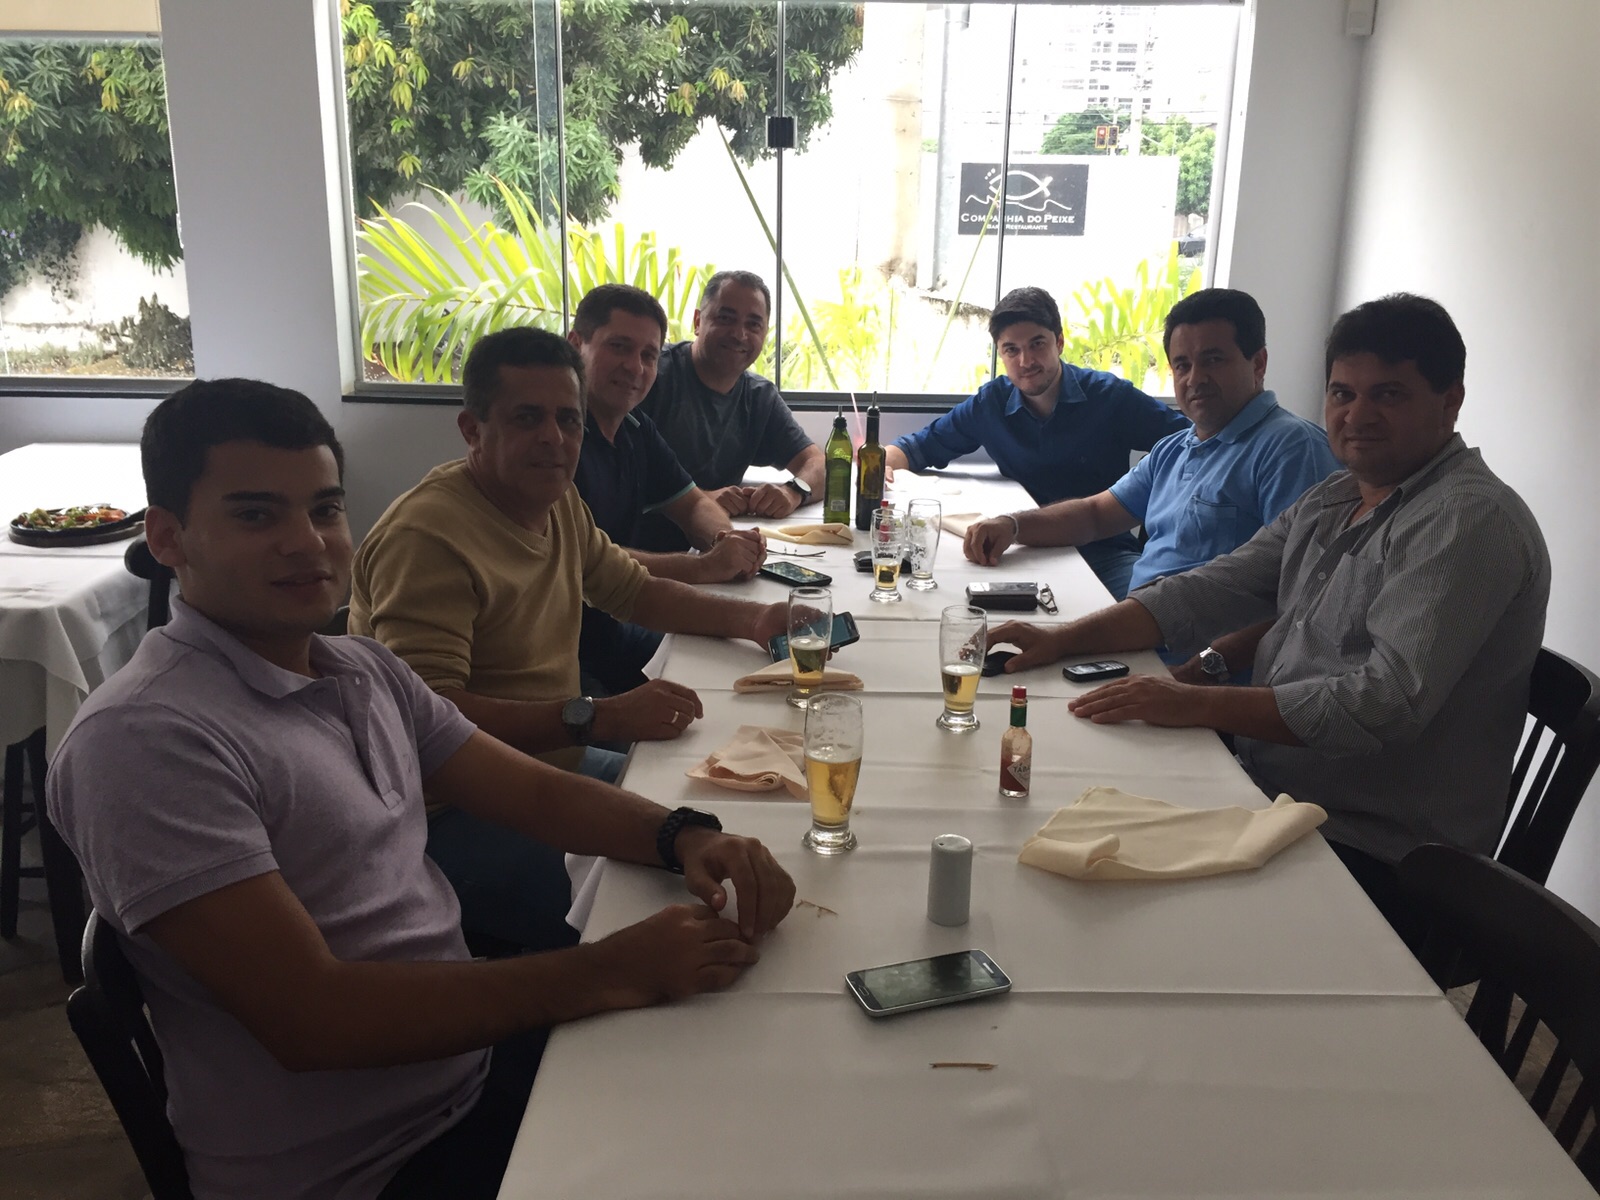 Diretoria azulina se reúne com fornecedor de material esportivo em almoço de negócios.